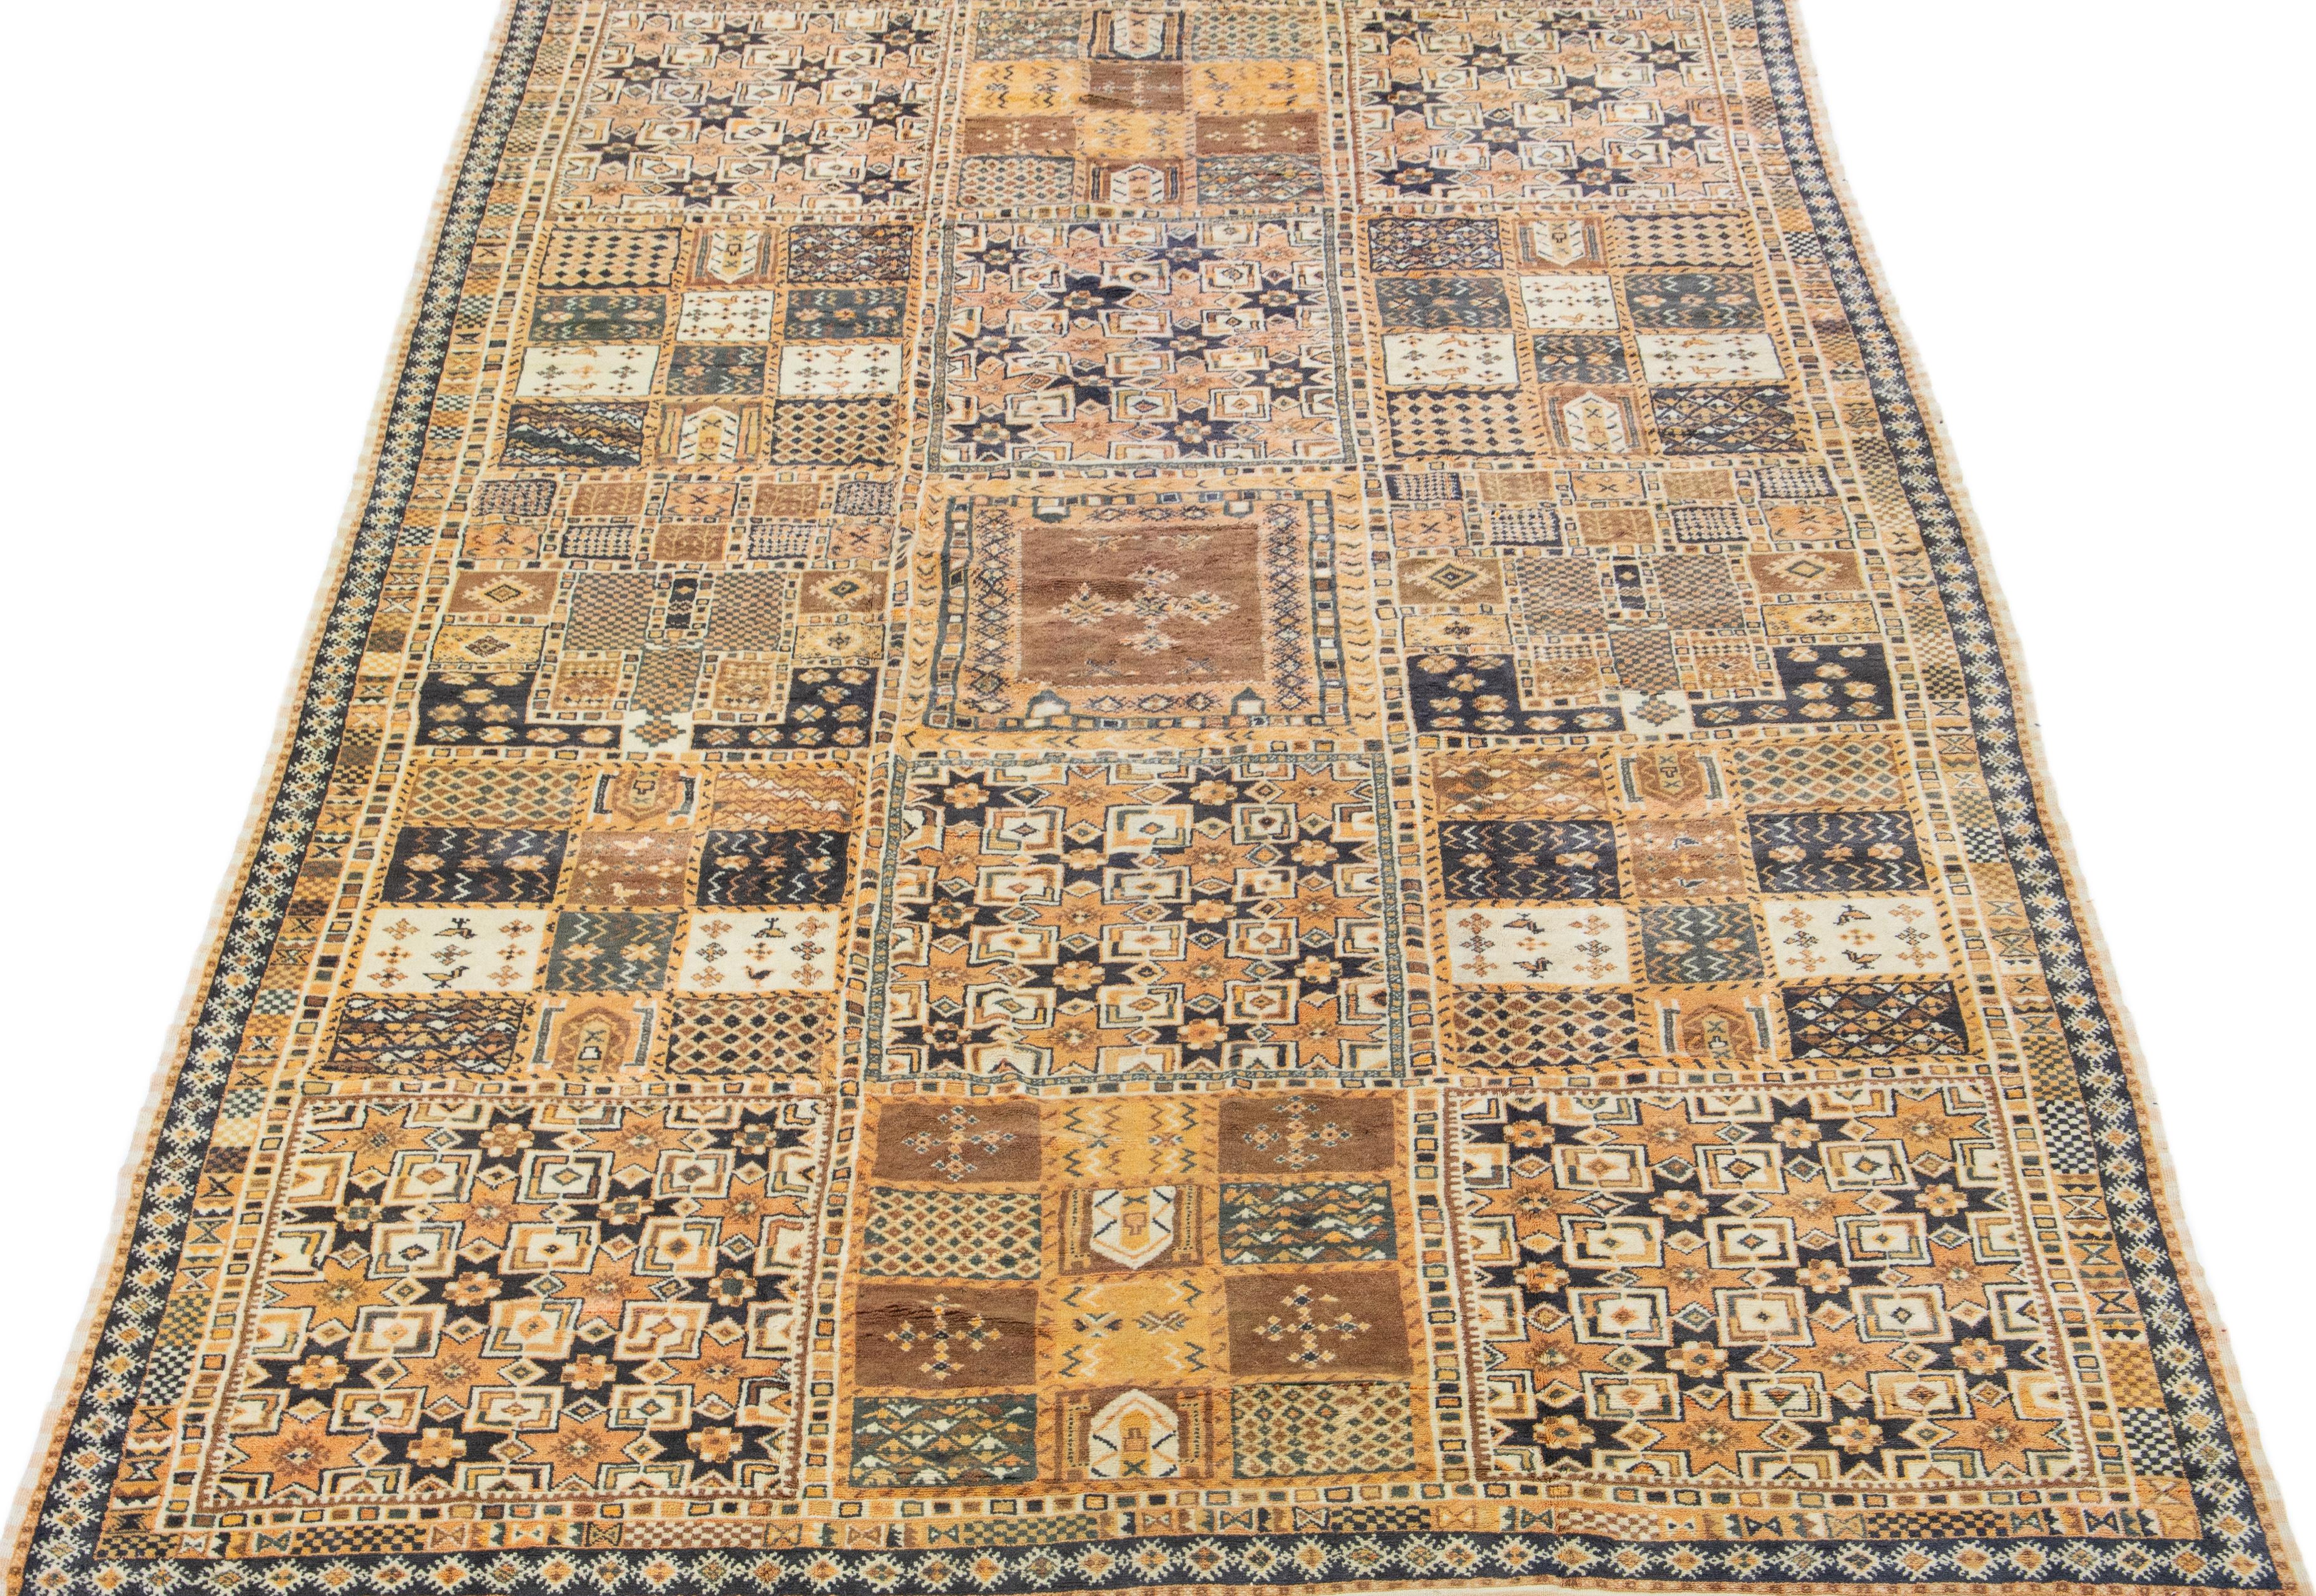 Dieser marokkanische Vintage-Teppich ist mit einem komplizierten geometrischen Muster in einer Reihe von auffälligen Farbtönen, darunter Pfirsich und Grau, versehen. Die Verwendung von hochwertigem Wollmaterial unterstreicht die sorgfältige,